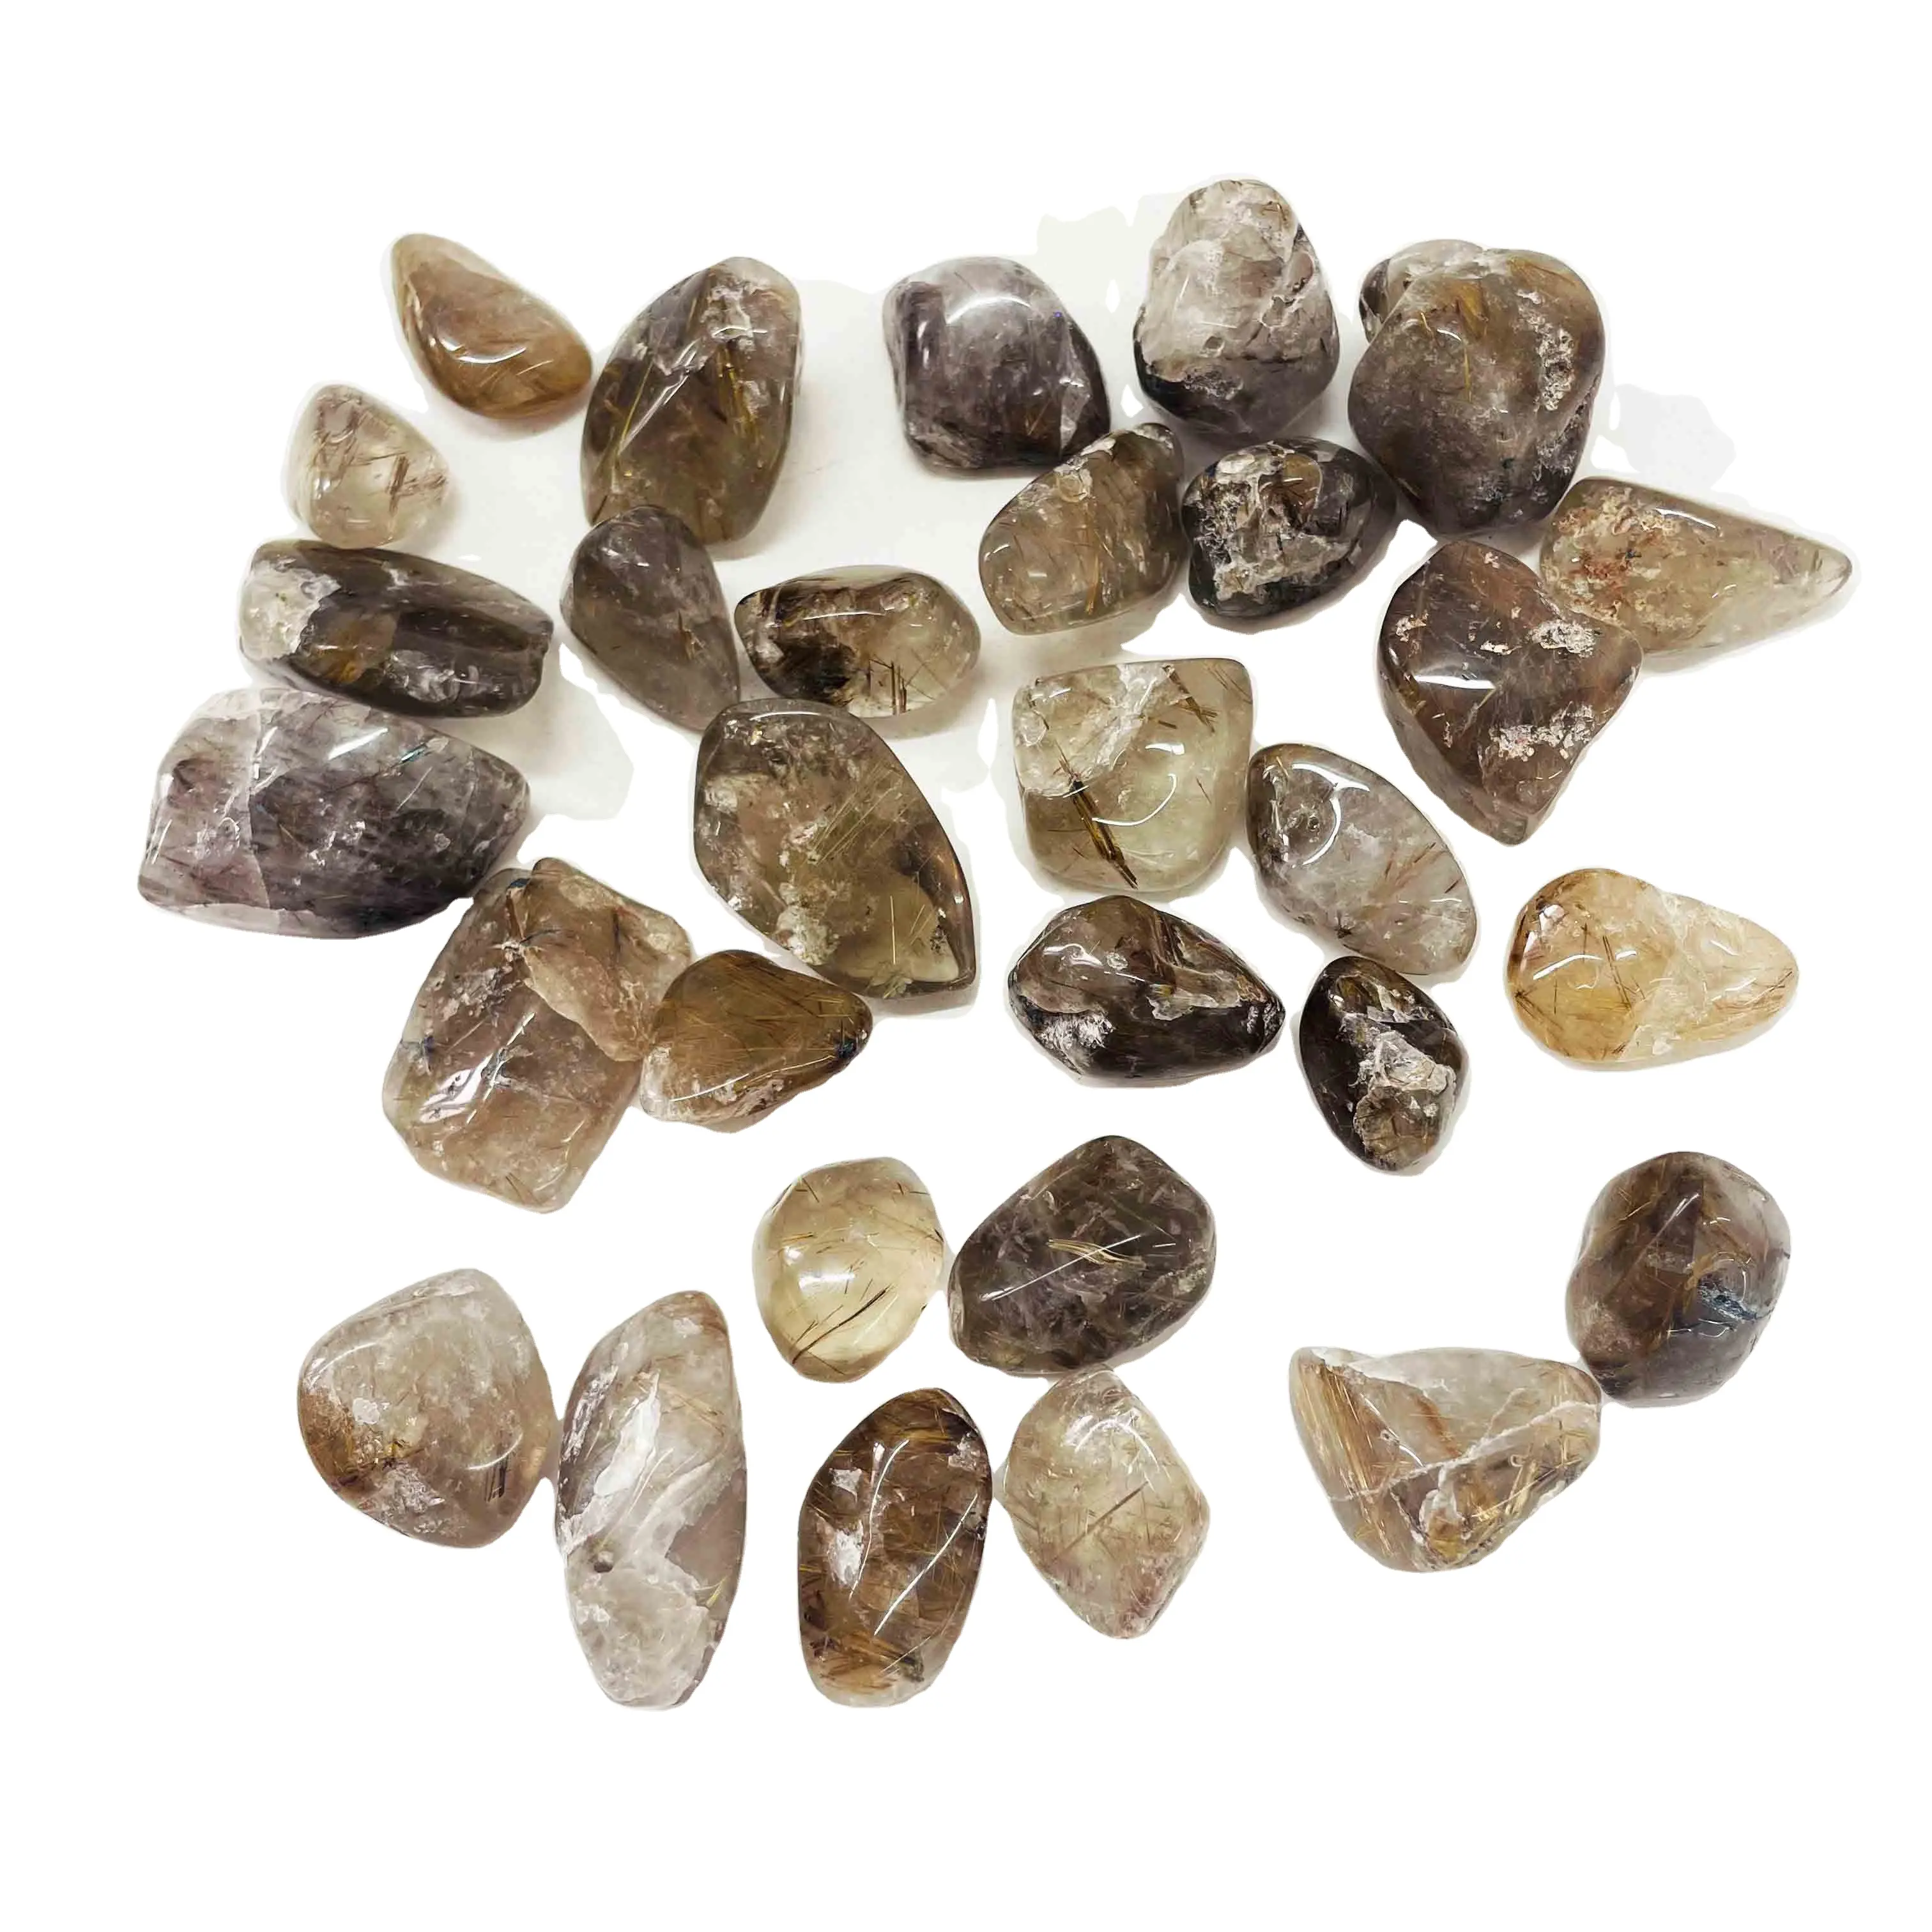 Bulk Hot Sale Natural Golden Rutilated Quartz Crystals Tumbled Stones For Decoration